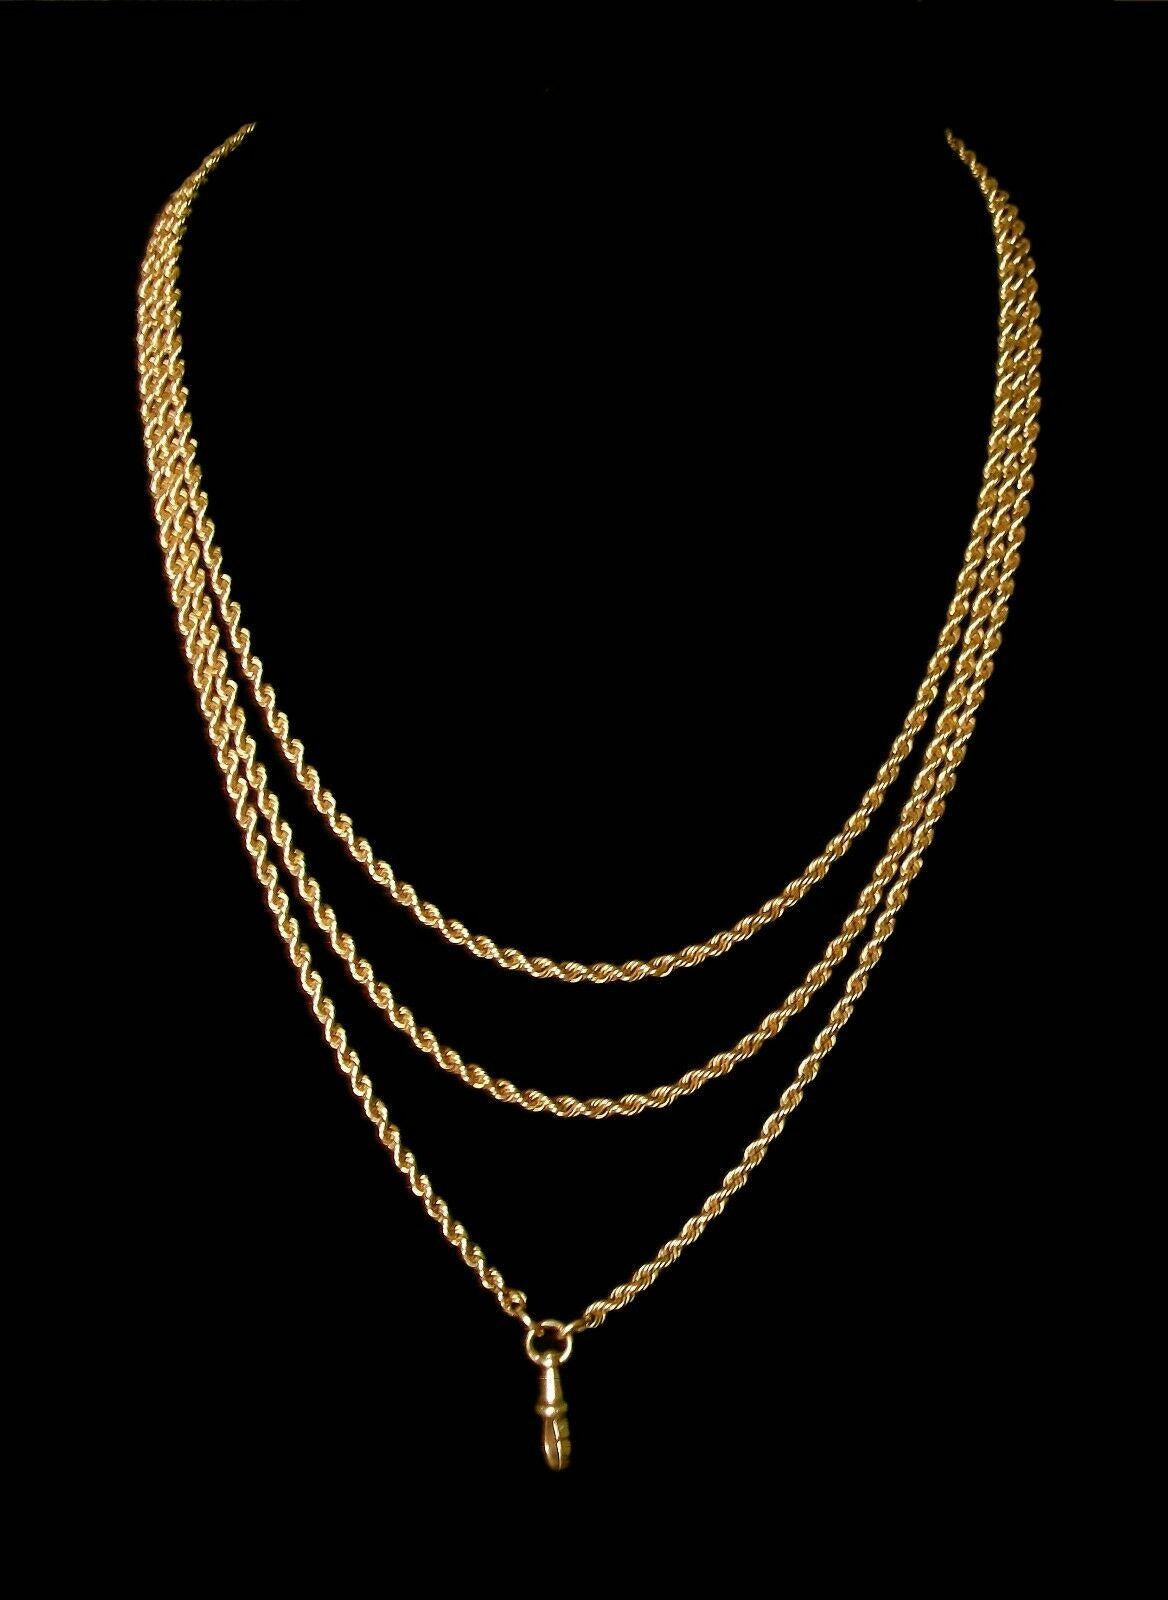 Außergewöhnliche und seltene extra lange viktorianische 12 Karat Gelbgold Seil Twist Taschenuhrkette - jetzt häufiger getragen (mit oder ohne Anhänger / Anhänger) als eine dreistrangige Goldkette Halskette - feinste Handwerkskunst - original